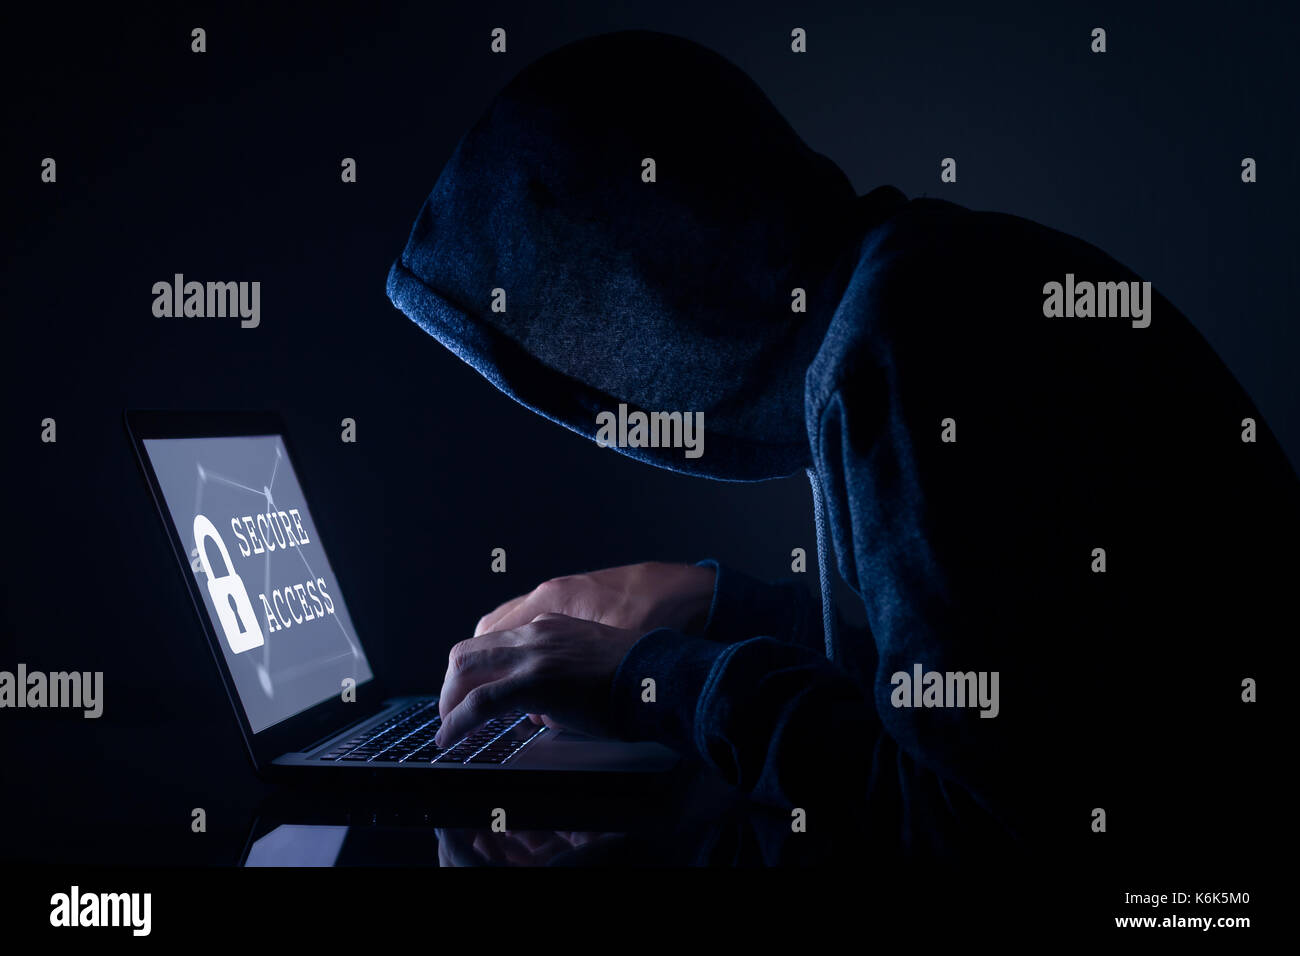 Hacker à capuchon dans une pièce sombre l'exécution d'une cyber-attaque à un accès sécurisé à voler des données sur internet, l'écran de l'ordinateur portable Banque D'Images